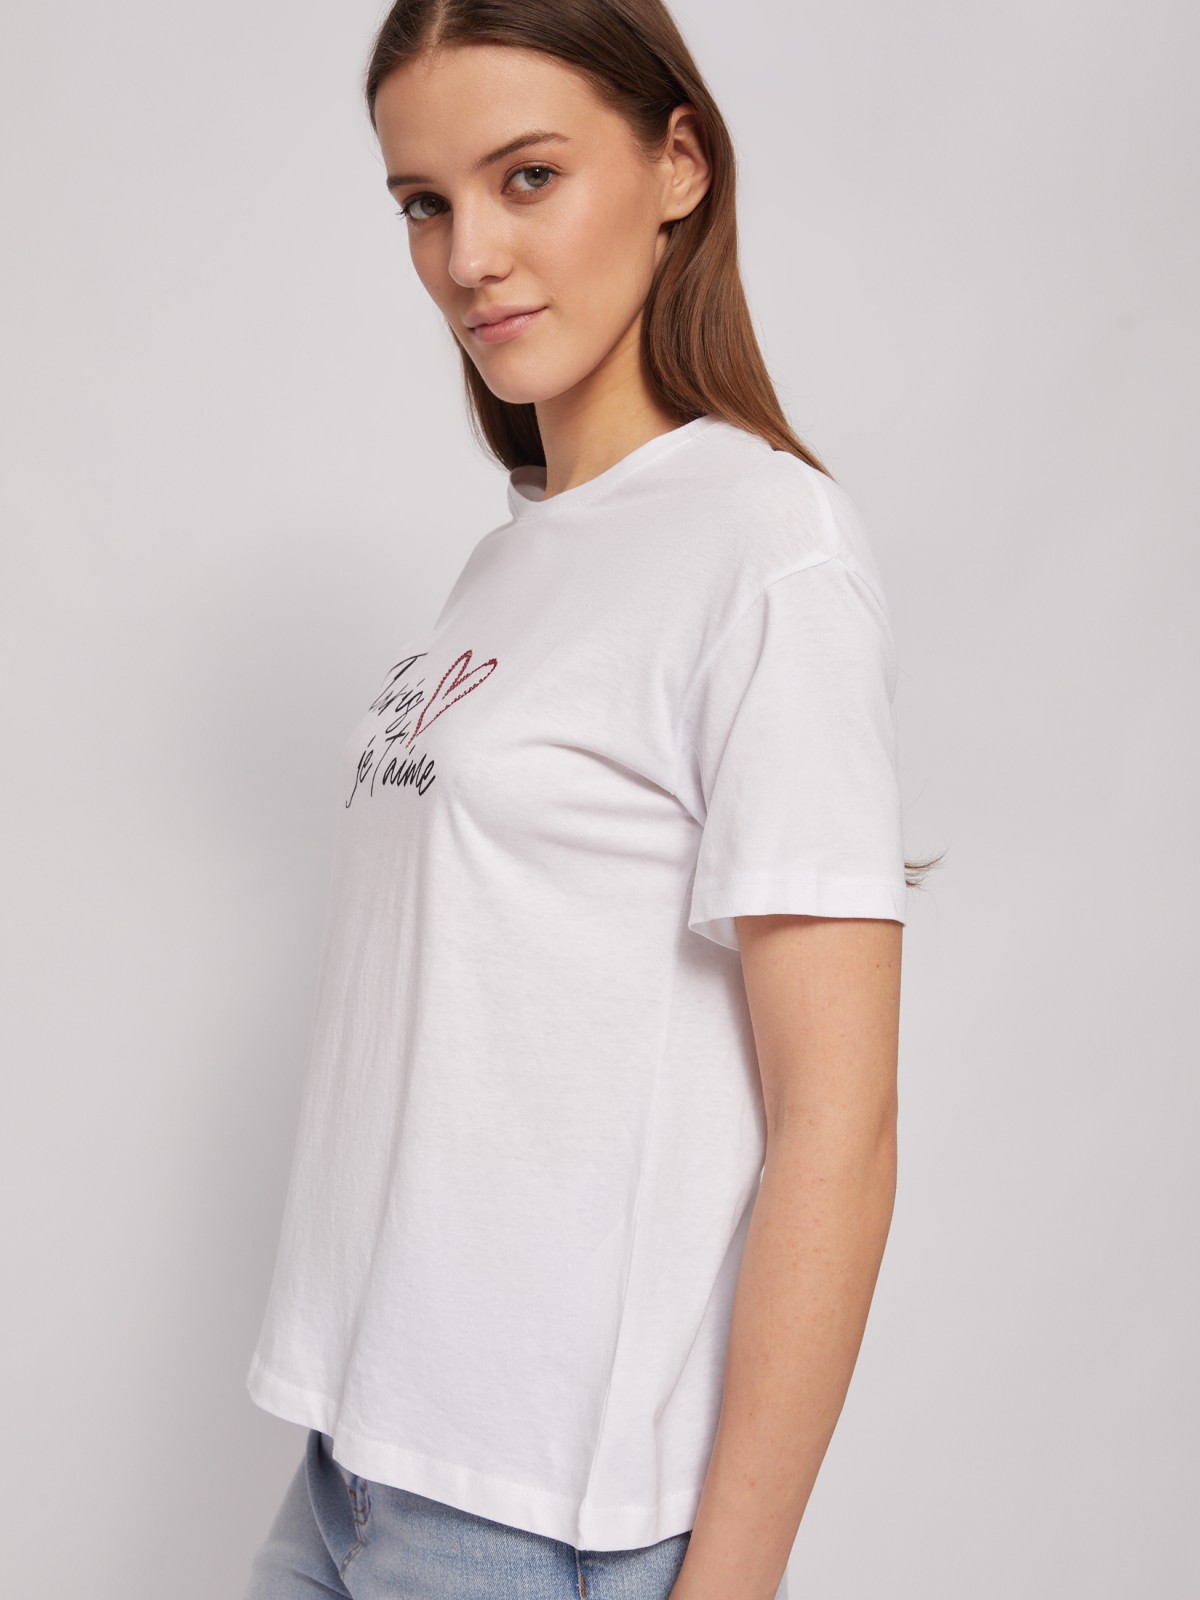 Трикотажная футболка из хлопка с принтом-надписью zolla 024223238653, цвет белый, размер S - фото 3